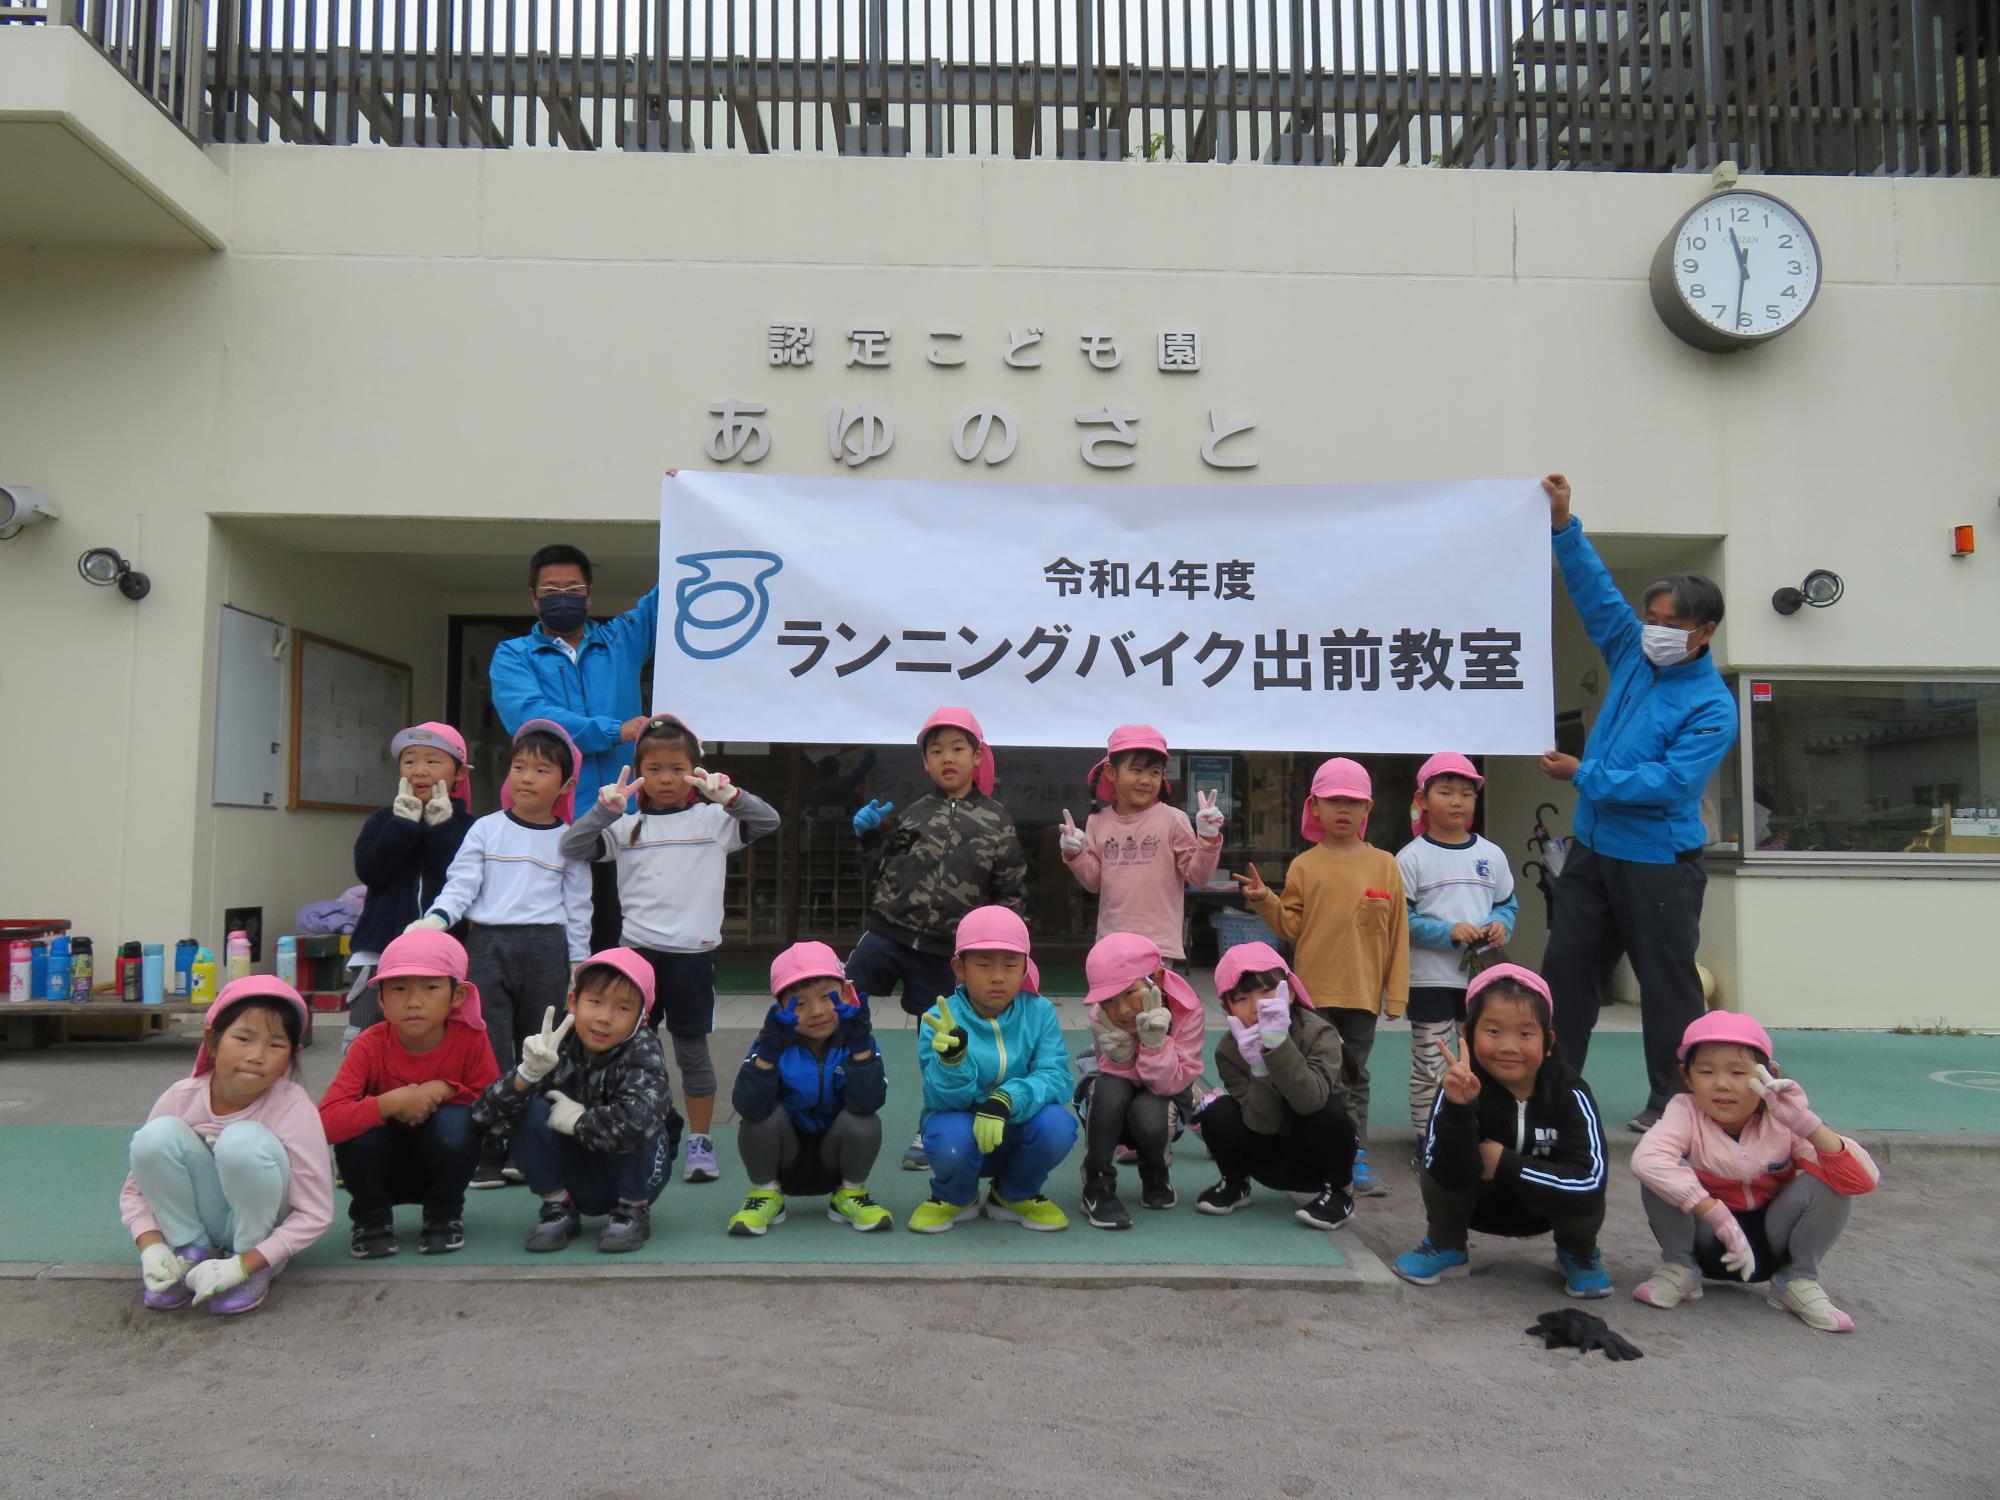 令和4年度ランニングバイク教室と書かれた幕の前でピンクの帽子を被った認定こども園あゆのさとの子供たちが並んでいる集合写真